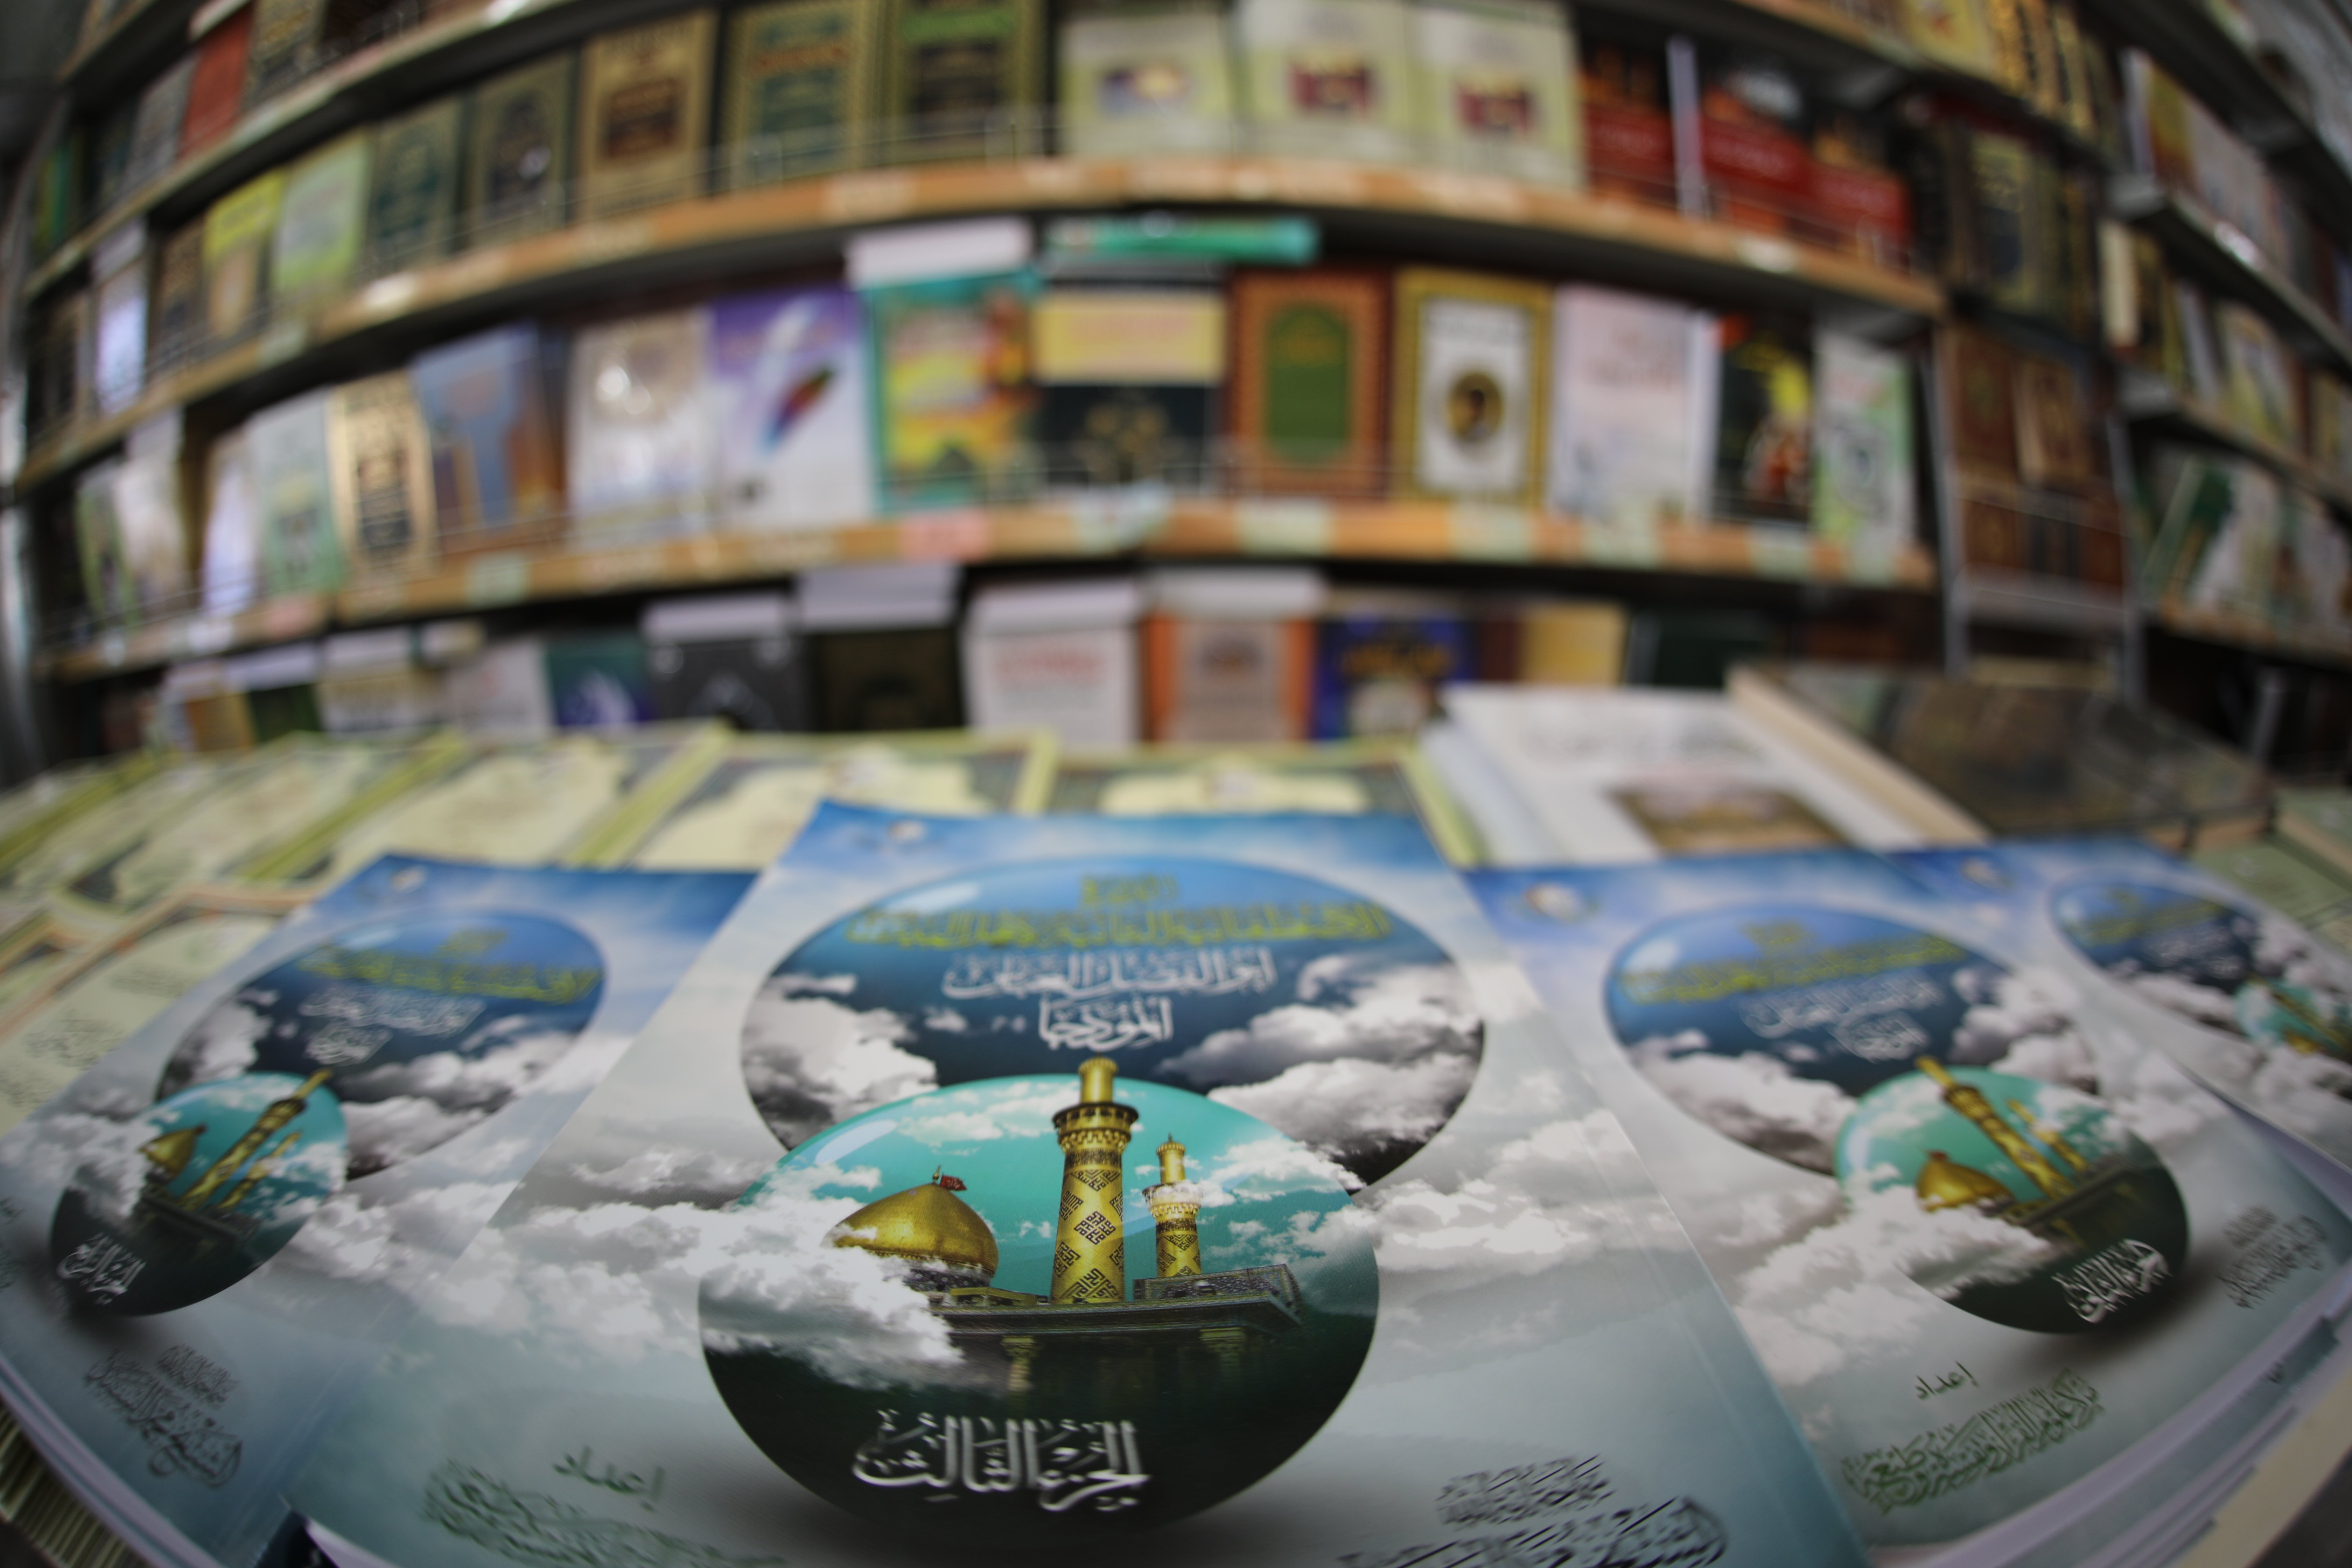 مبيعات معهد القرآن الكريم رافد قرآني يقصده المختصون للتزود بشتى المصادر المهمة